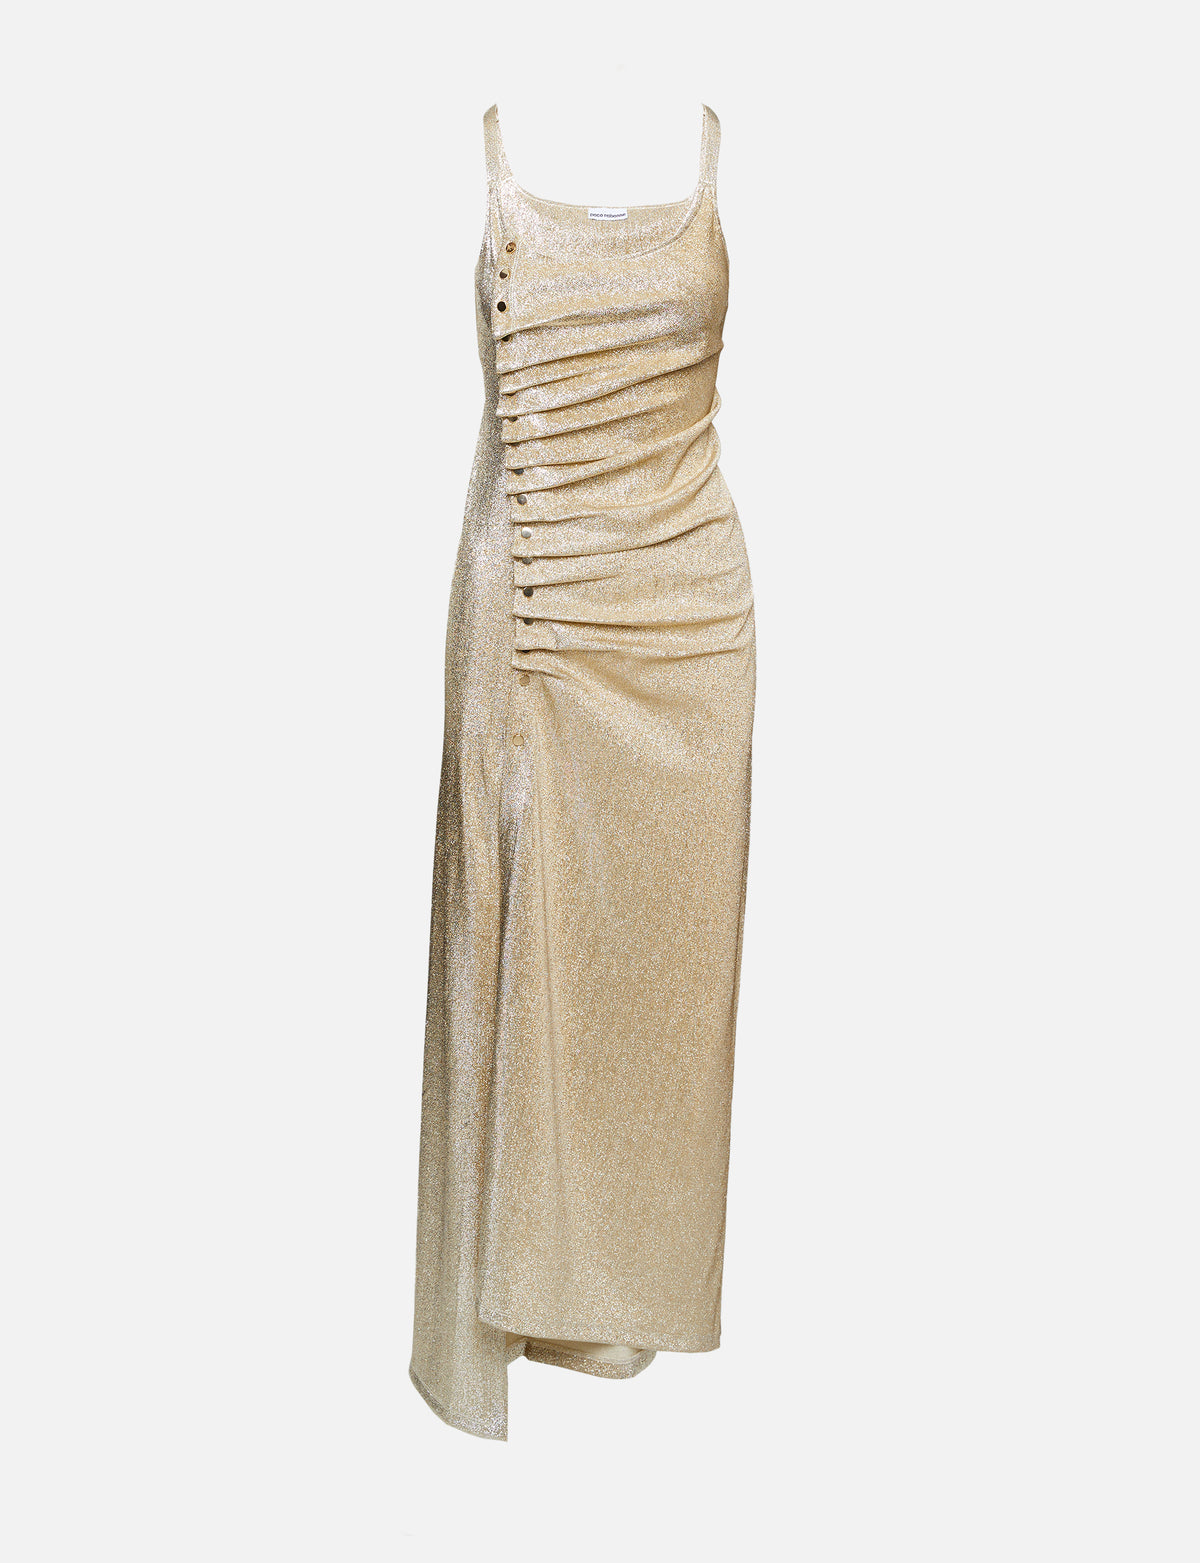 view 1 - Golden Stretch Jersey Dress